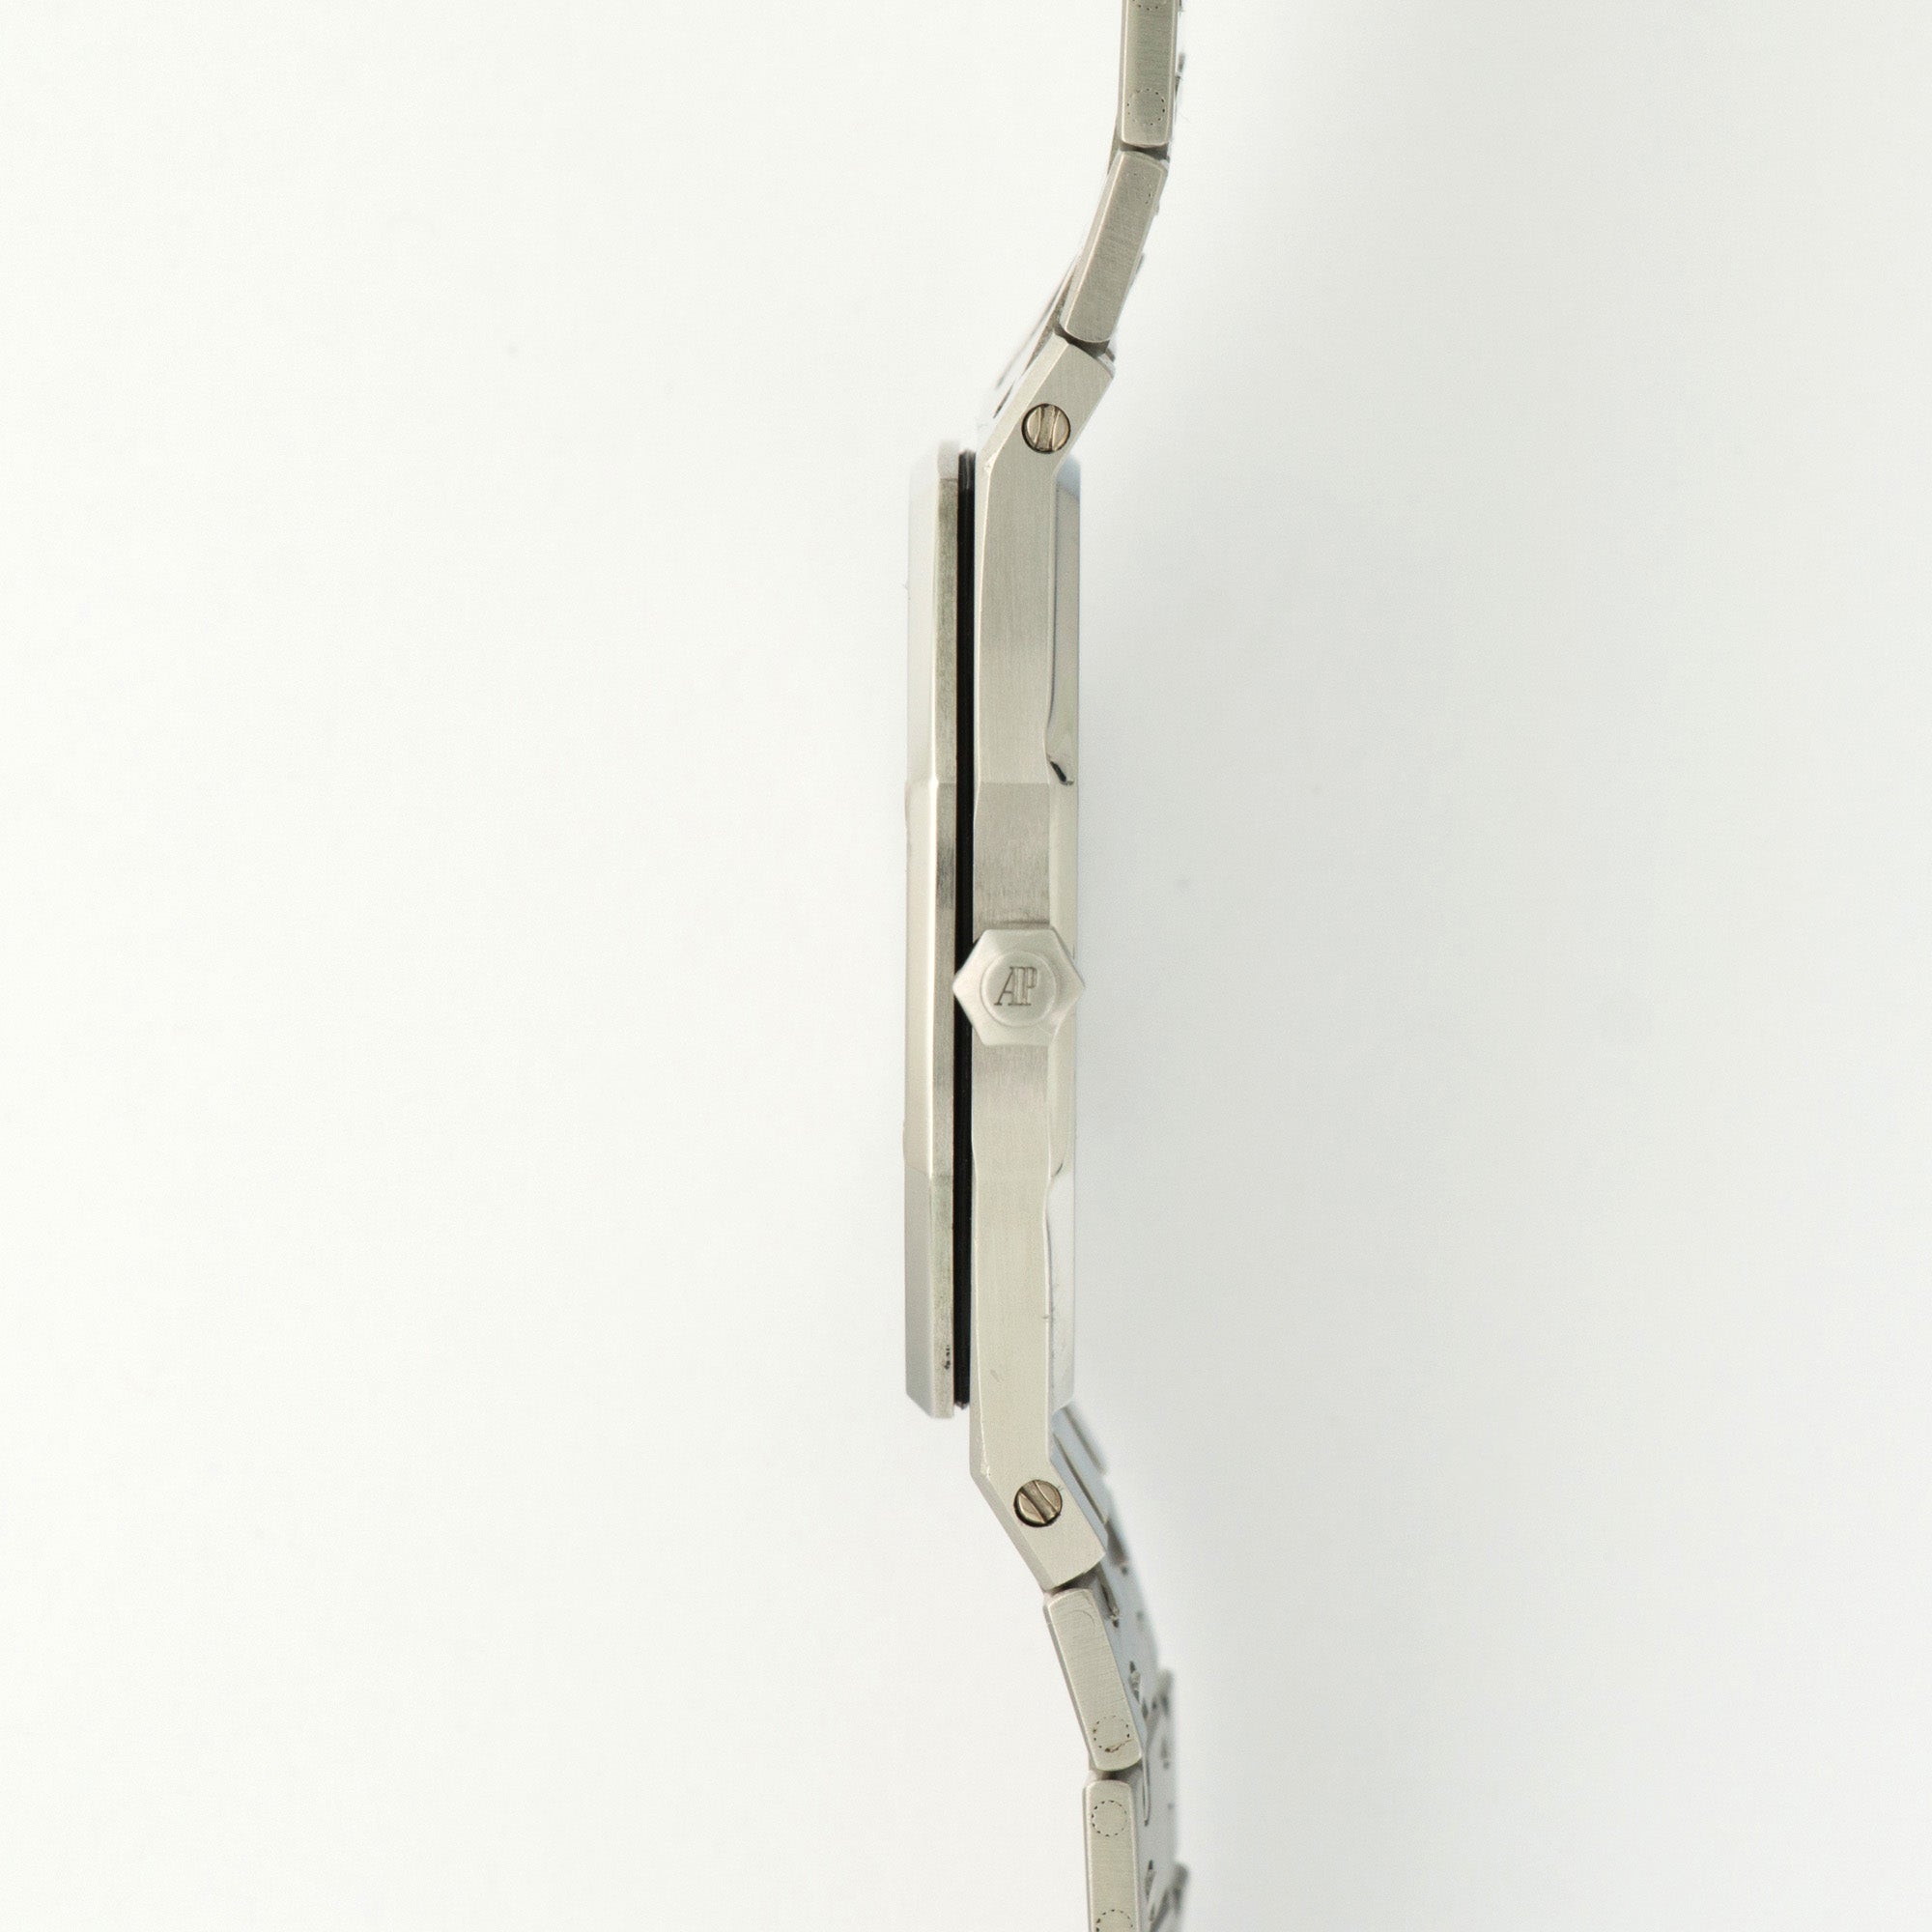 Audemars Piguet - Audemars Piguet Royal Oak Steel Watch Ref. 56143 - The Keystone Watches